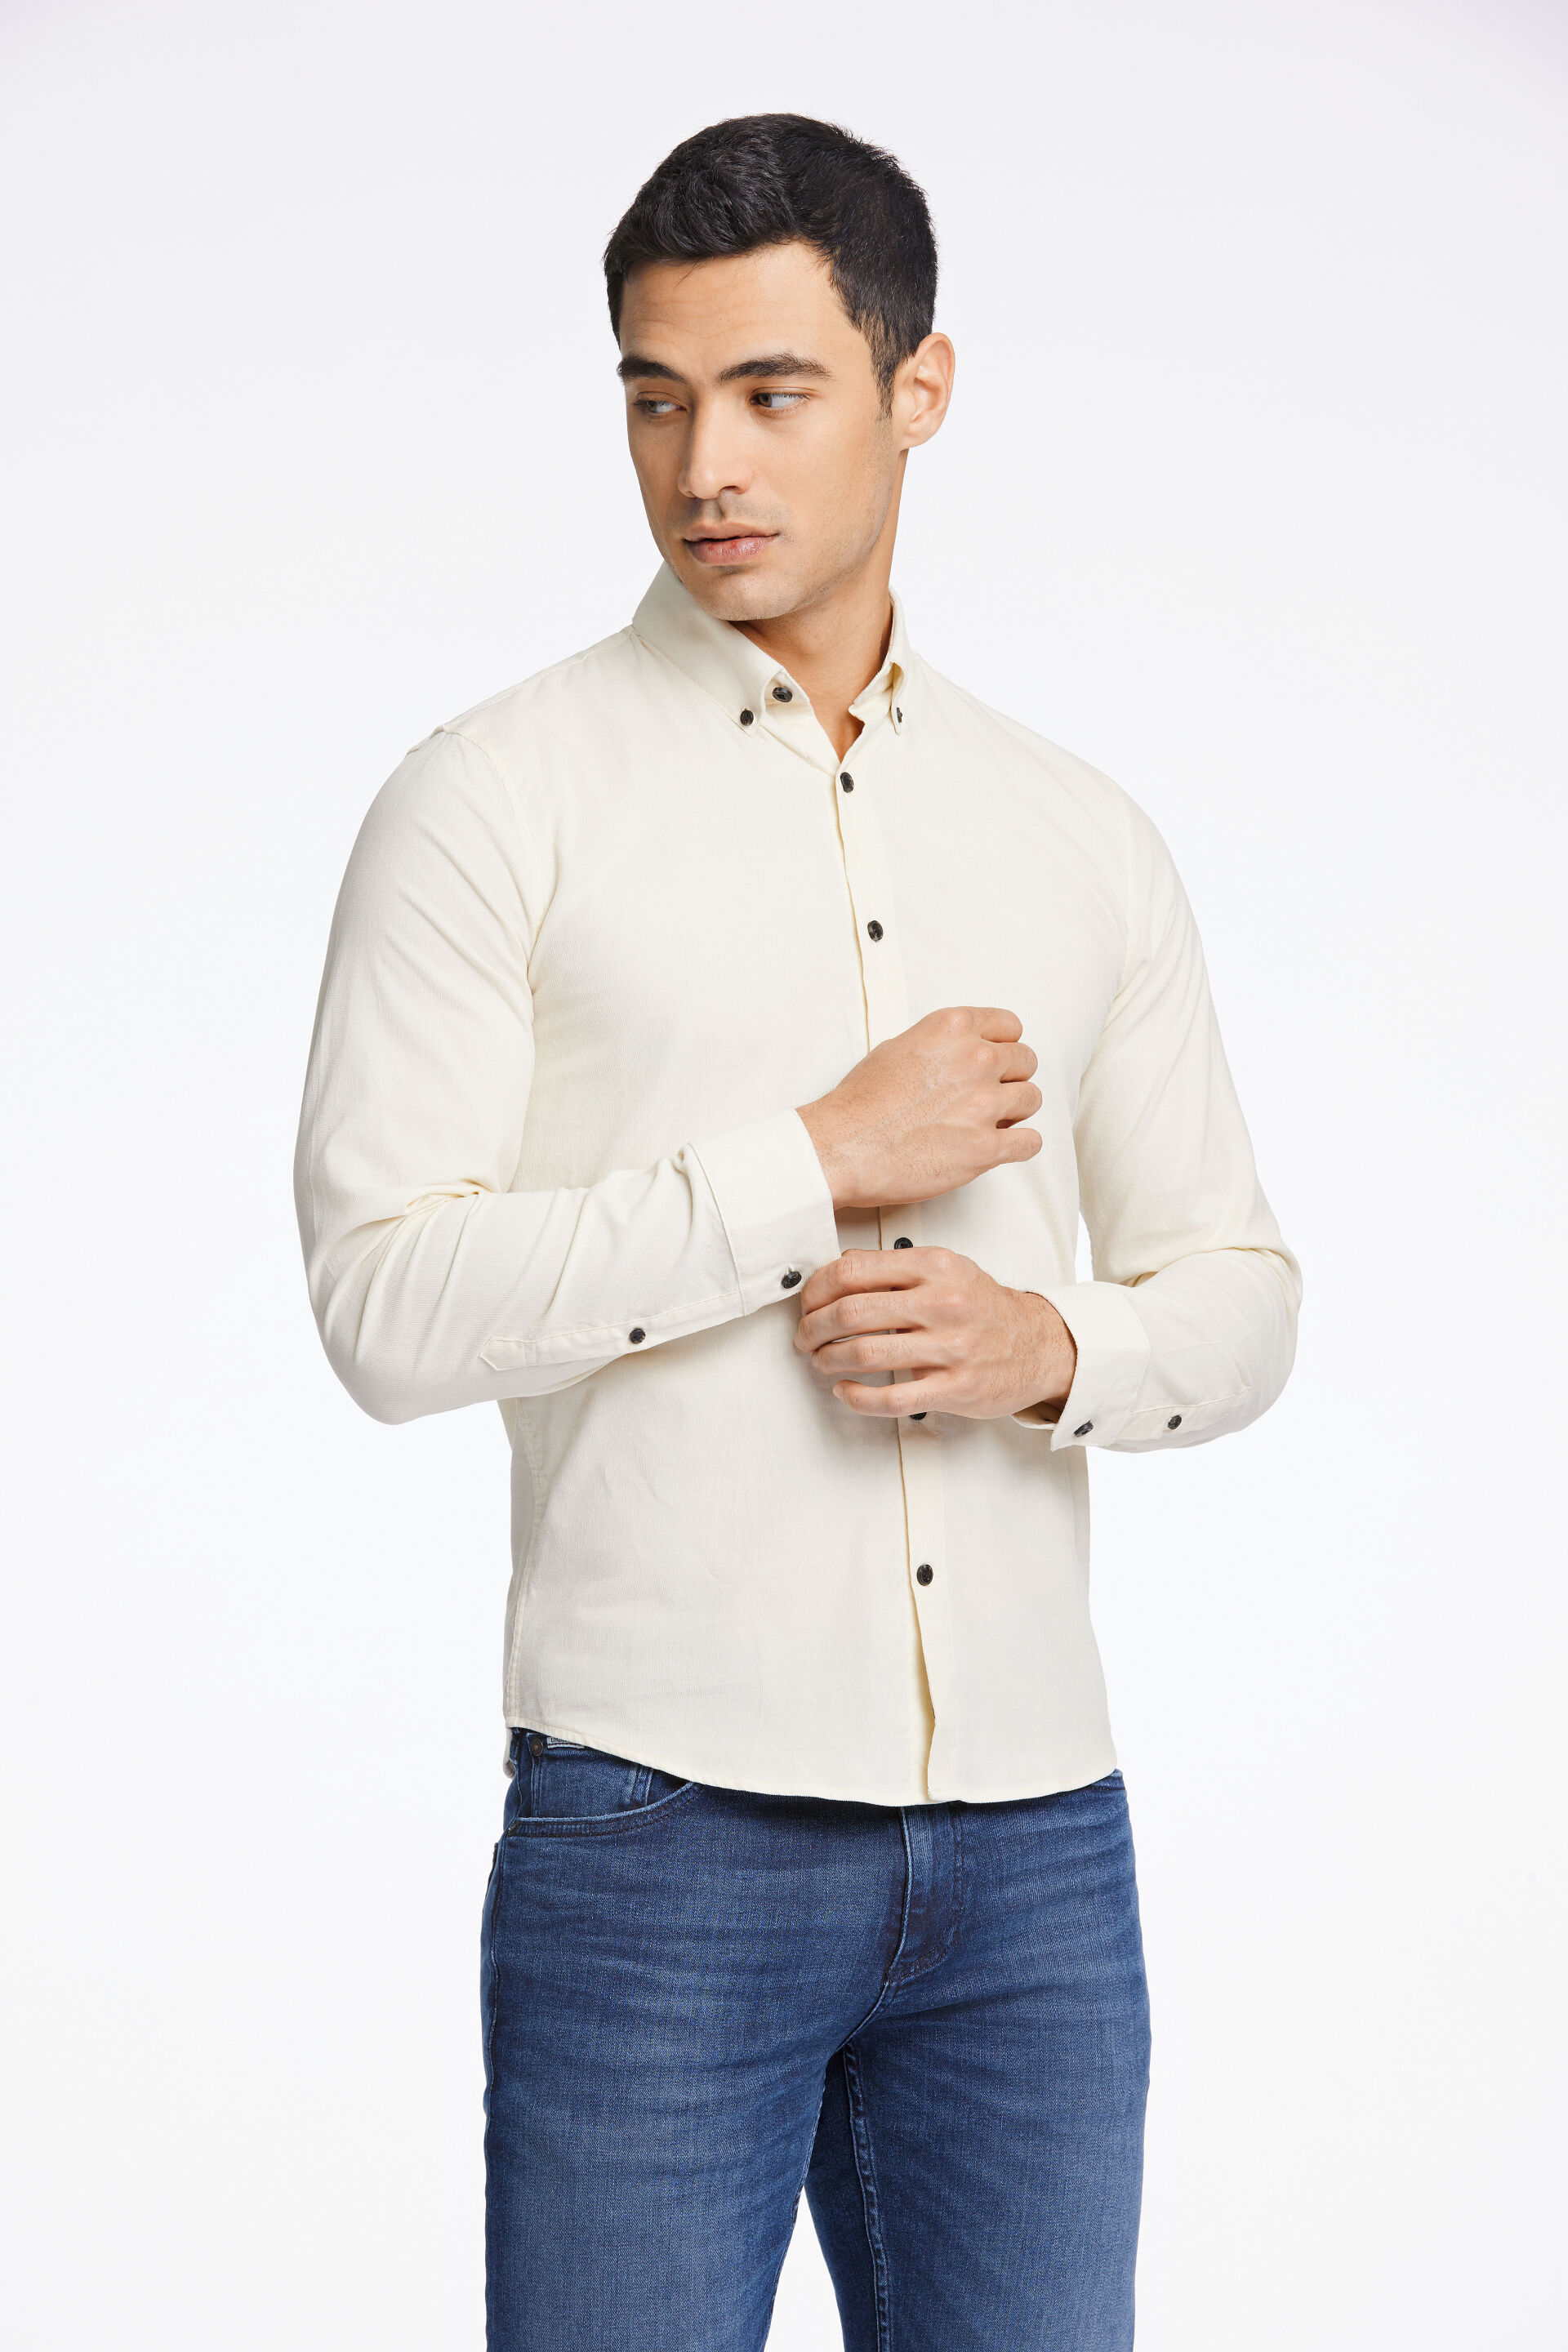 Fløjlsskjorte Fløjlsskjorte Hvid 30-203248